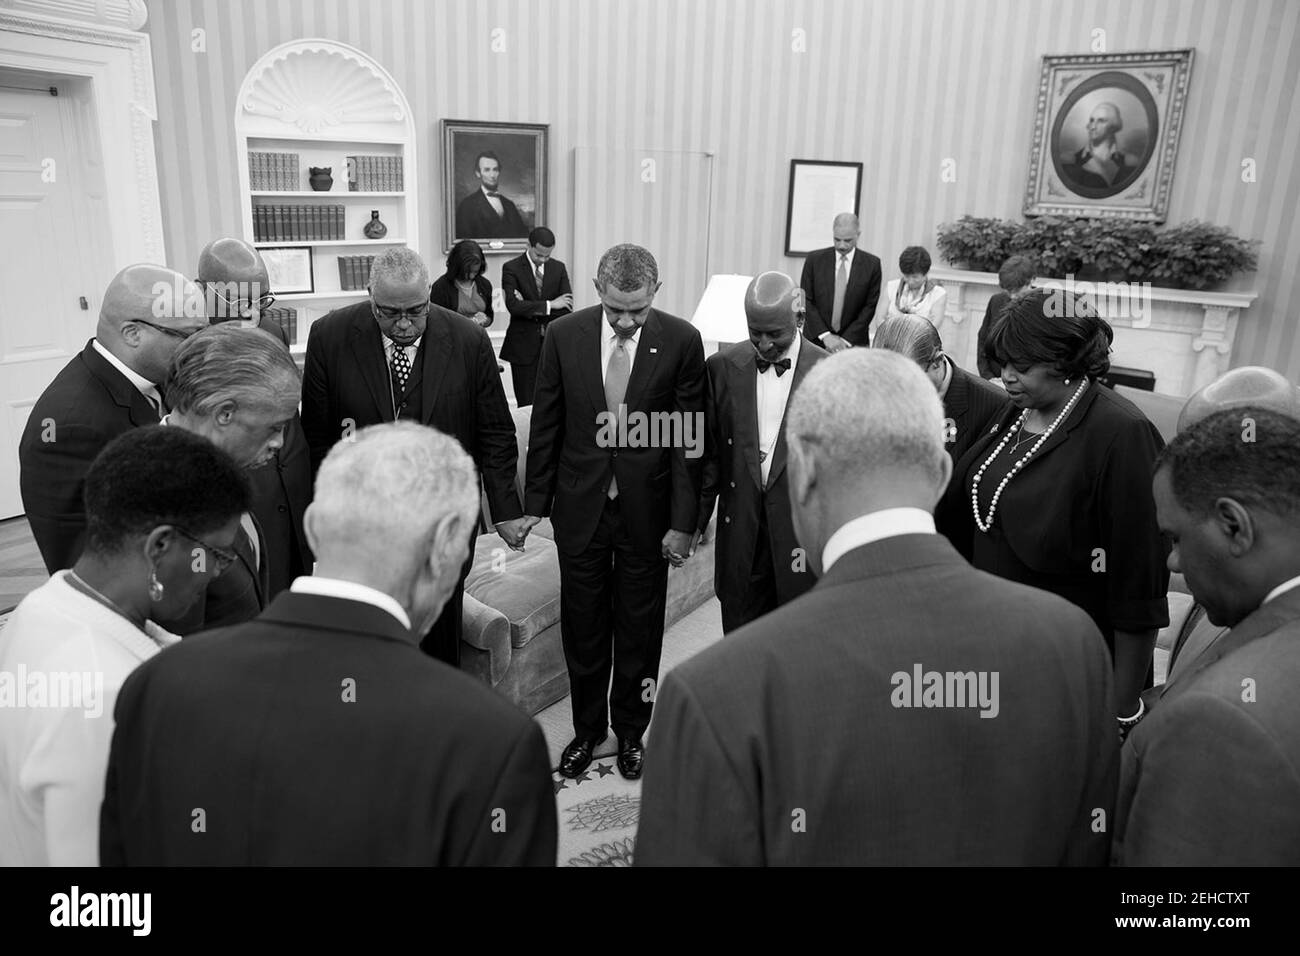 Präsident Barack Obama betet mit den Glaubensführern im Oval Office nach einem Treffen, um den 50th. Jahrestag des Marsches über Washington für Arbeitsplätze und Freiheit am 26. August 2013 zu diskutieren. Stockfoto